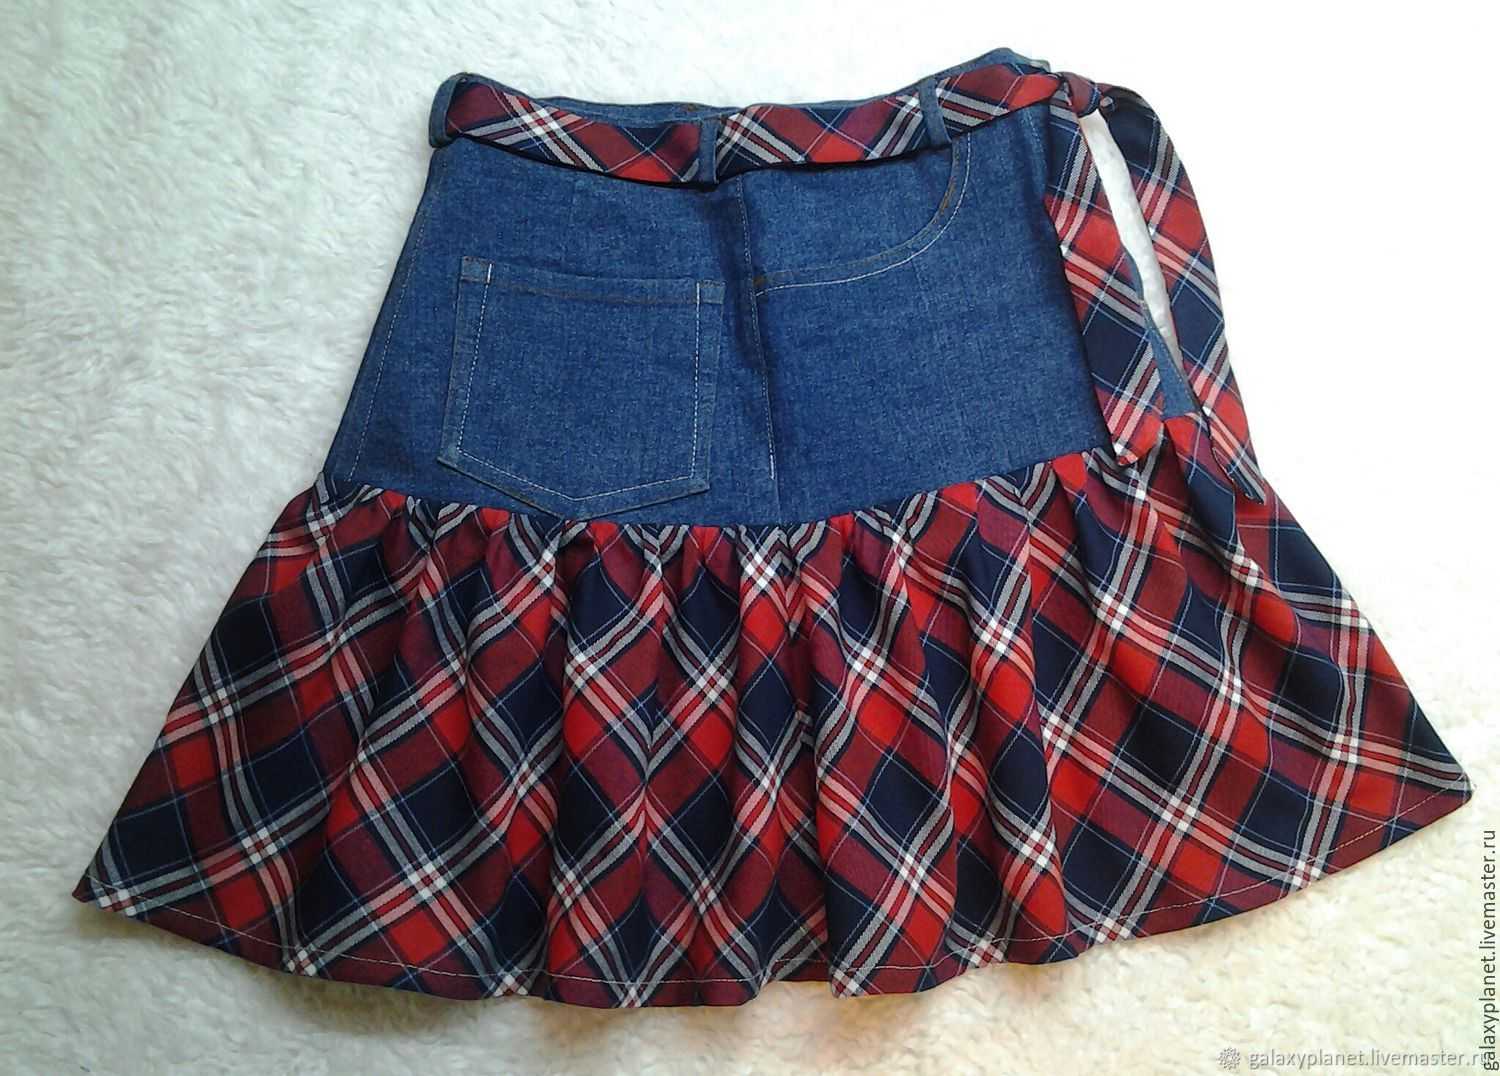 Выкройка джинсовой юбки Такая джинсовая юбка карандаш – базовая модель практически любого женского гардероба У юбки очень правильная длина и зауженный